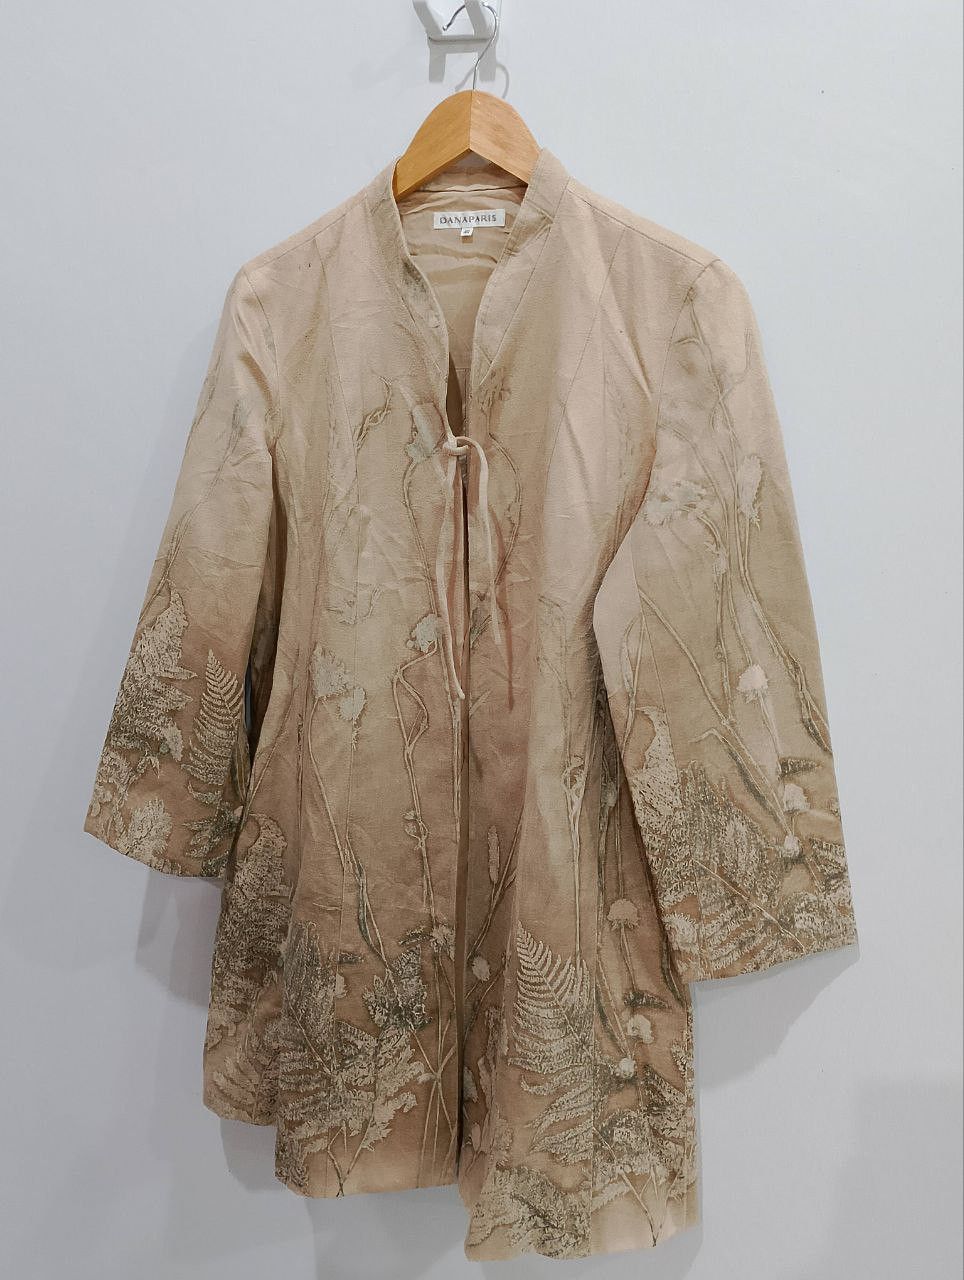 Vintage DANA PARIS Floral Jacquard Style Dress Coat Jacket - 5